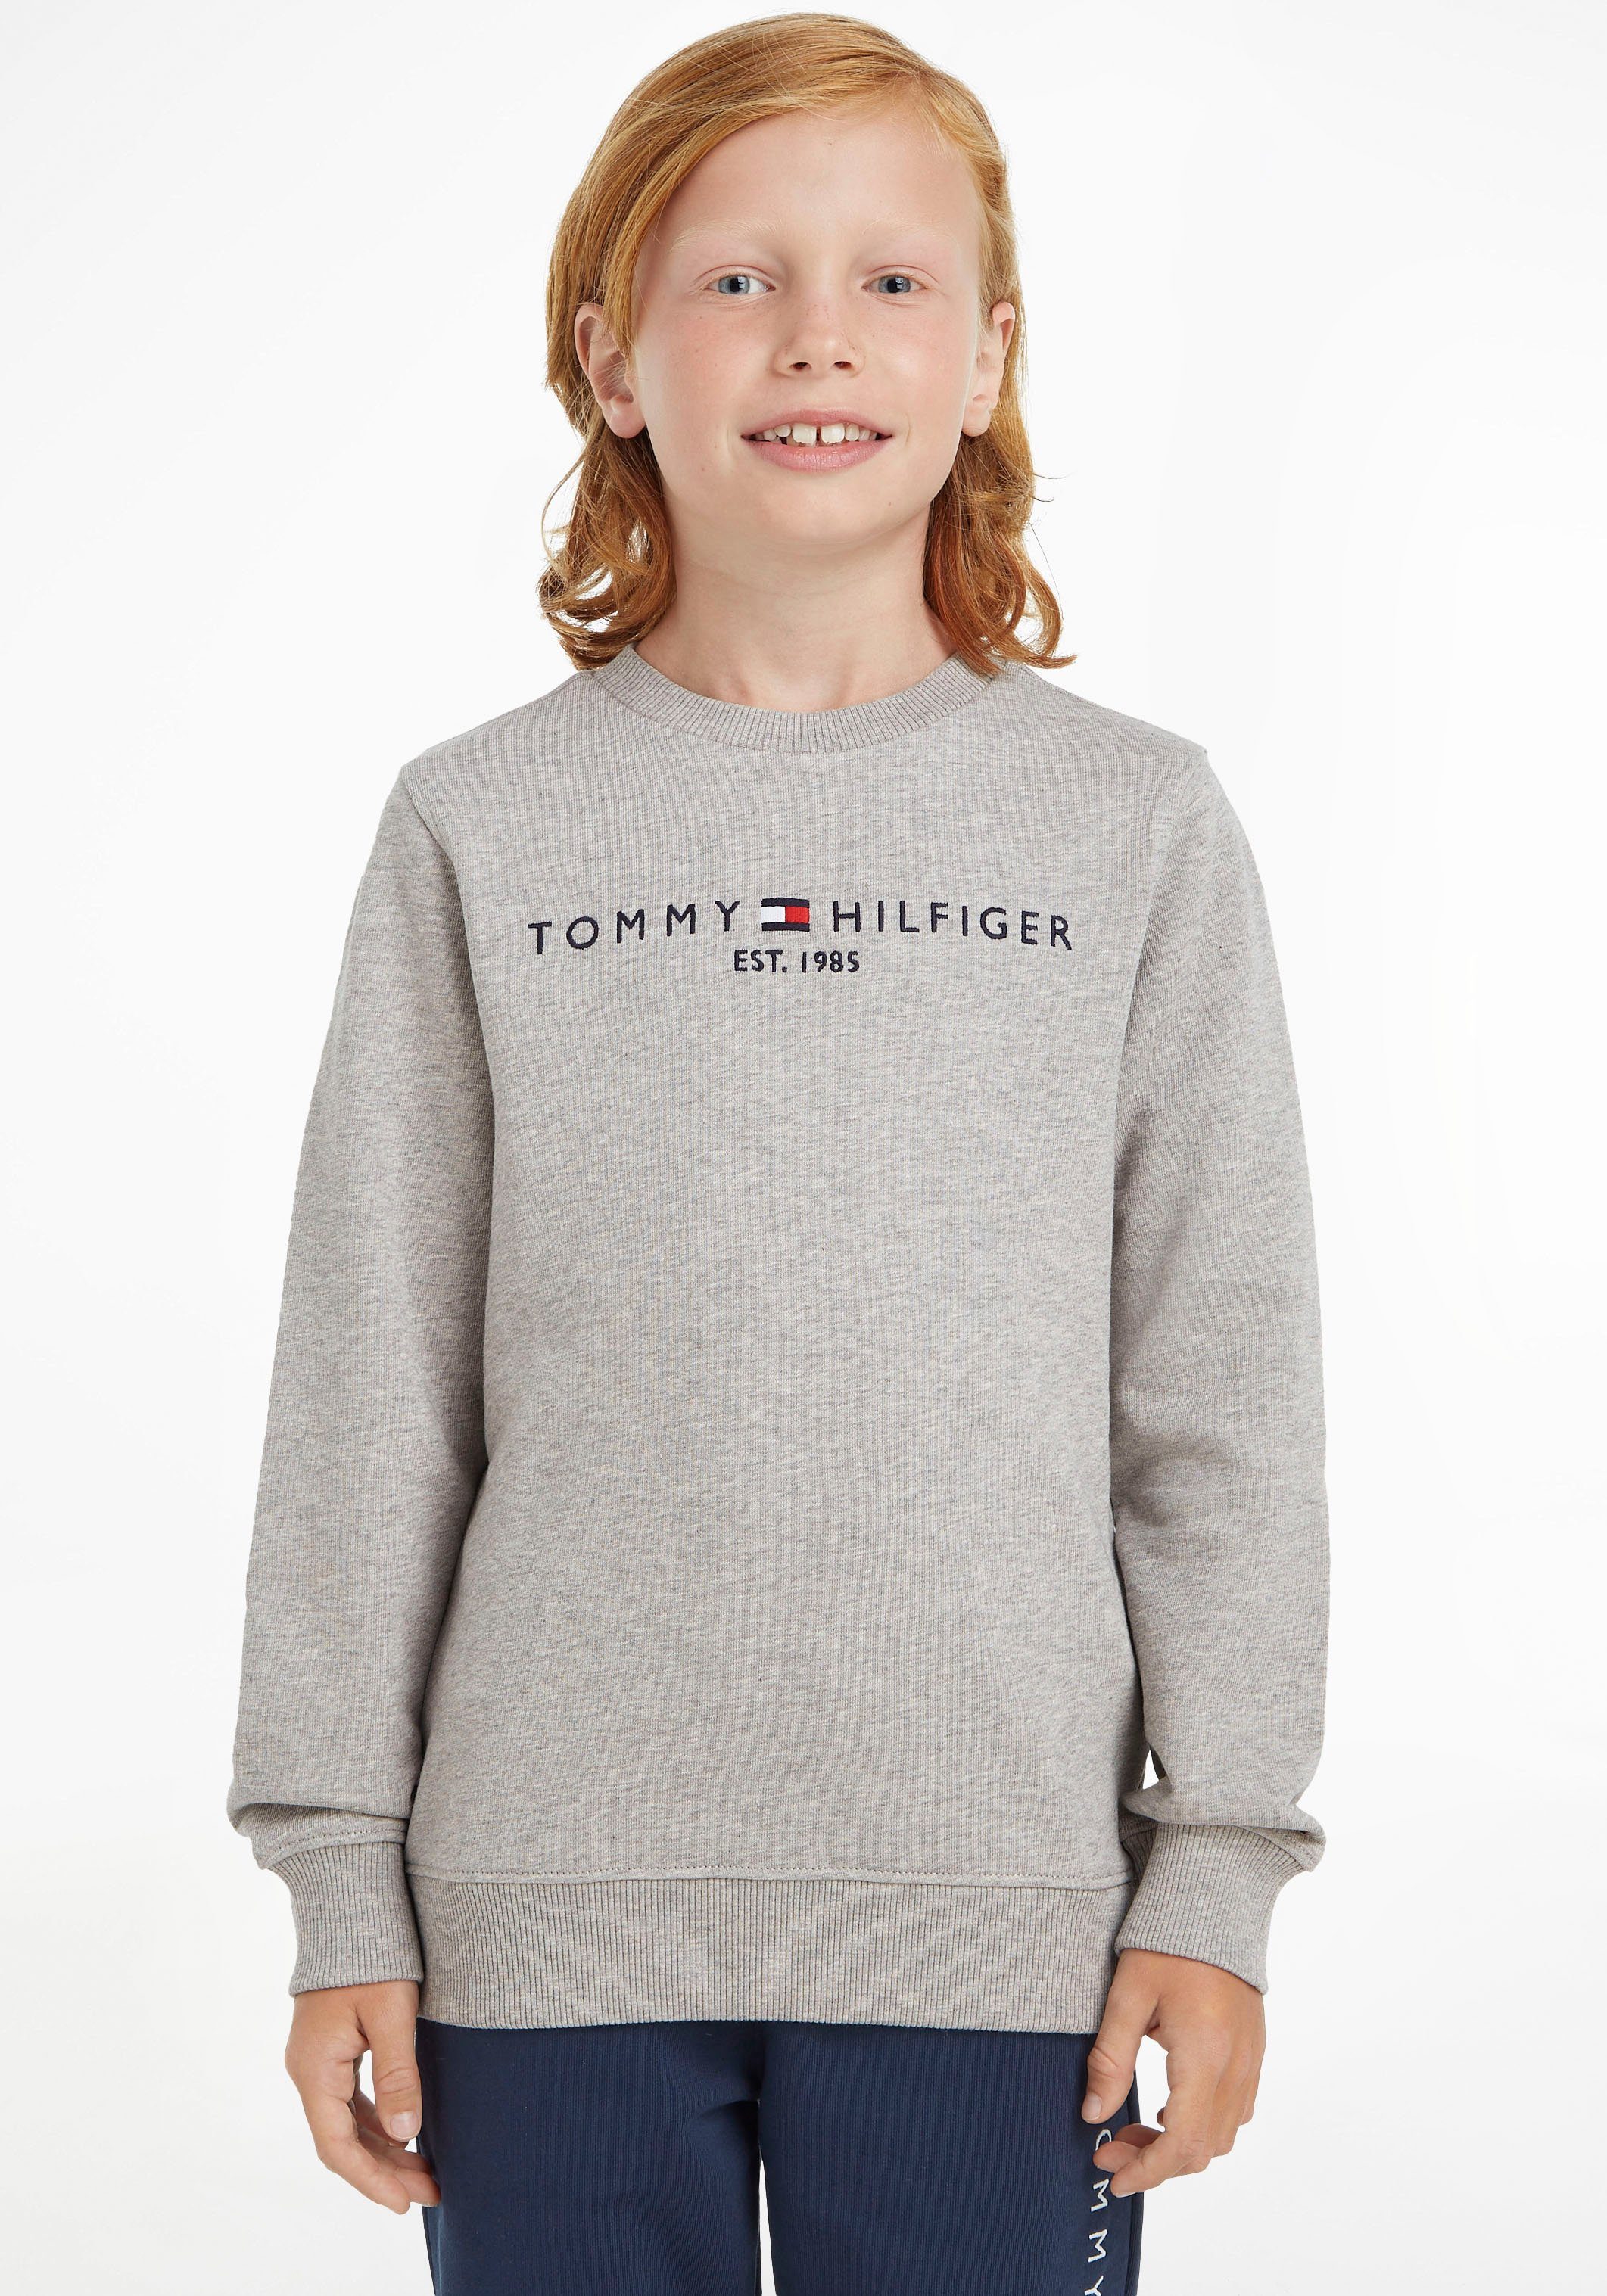 Mädchen Jungen Kids Kinder ESSENTIAL Junior MiniMe,für SWEATSHIRT Sweatshirt und Hilfiger Tommy